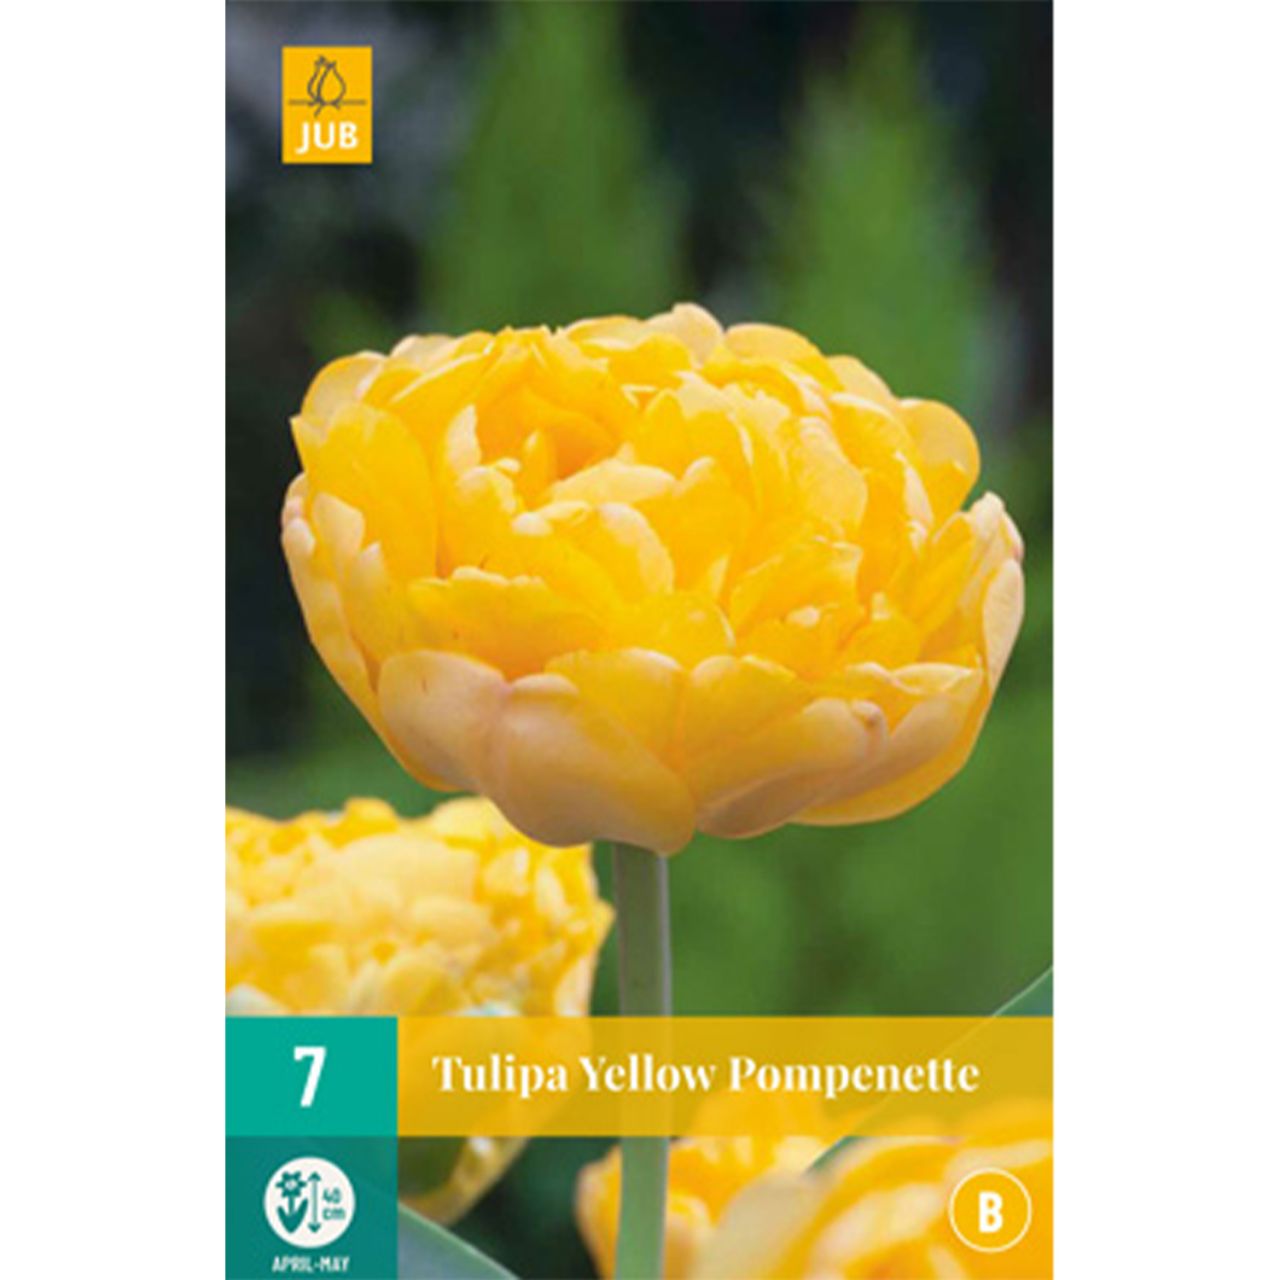 Kategorie <b>Herbst-Blumenzwiebeln </b> - Tulpe 'Yellow Pompenette' -  7 Stück - Tulipa 'Yellow Pompenette'